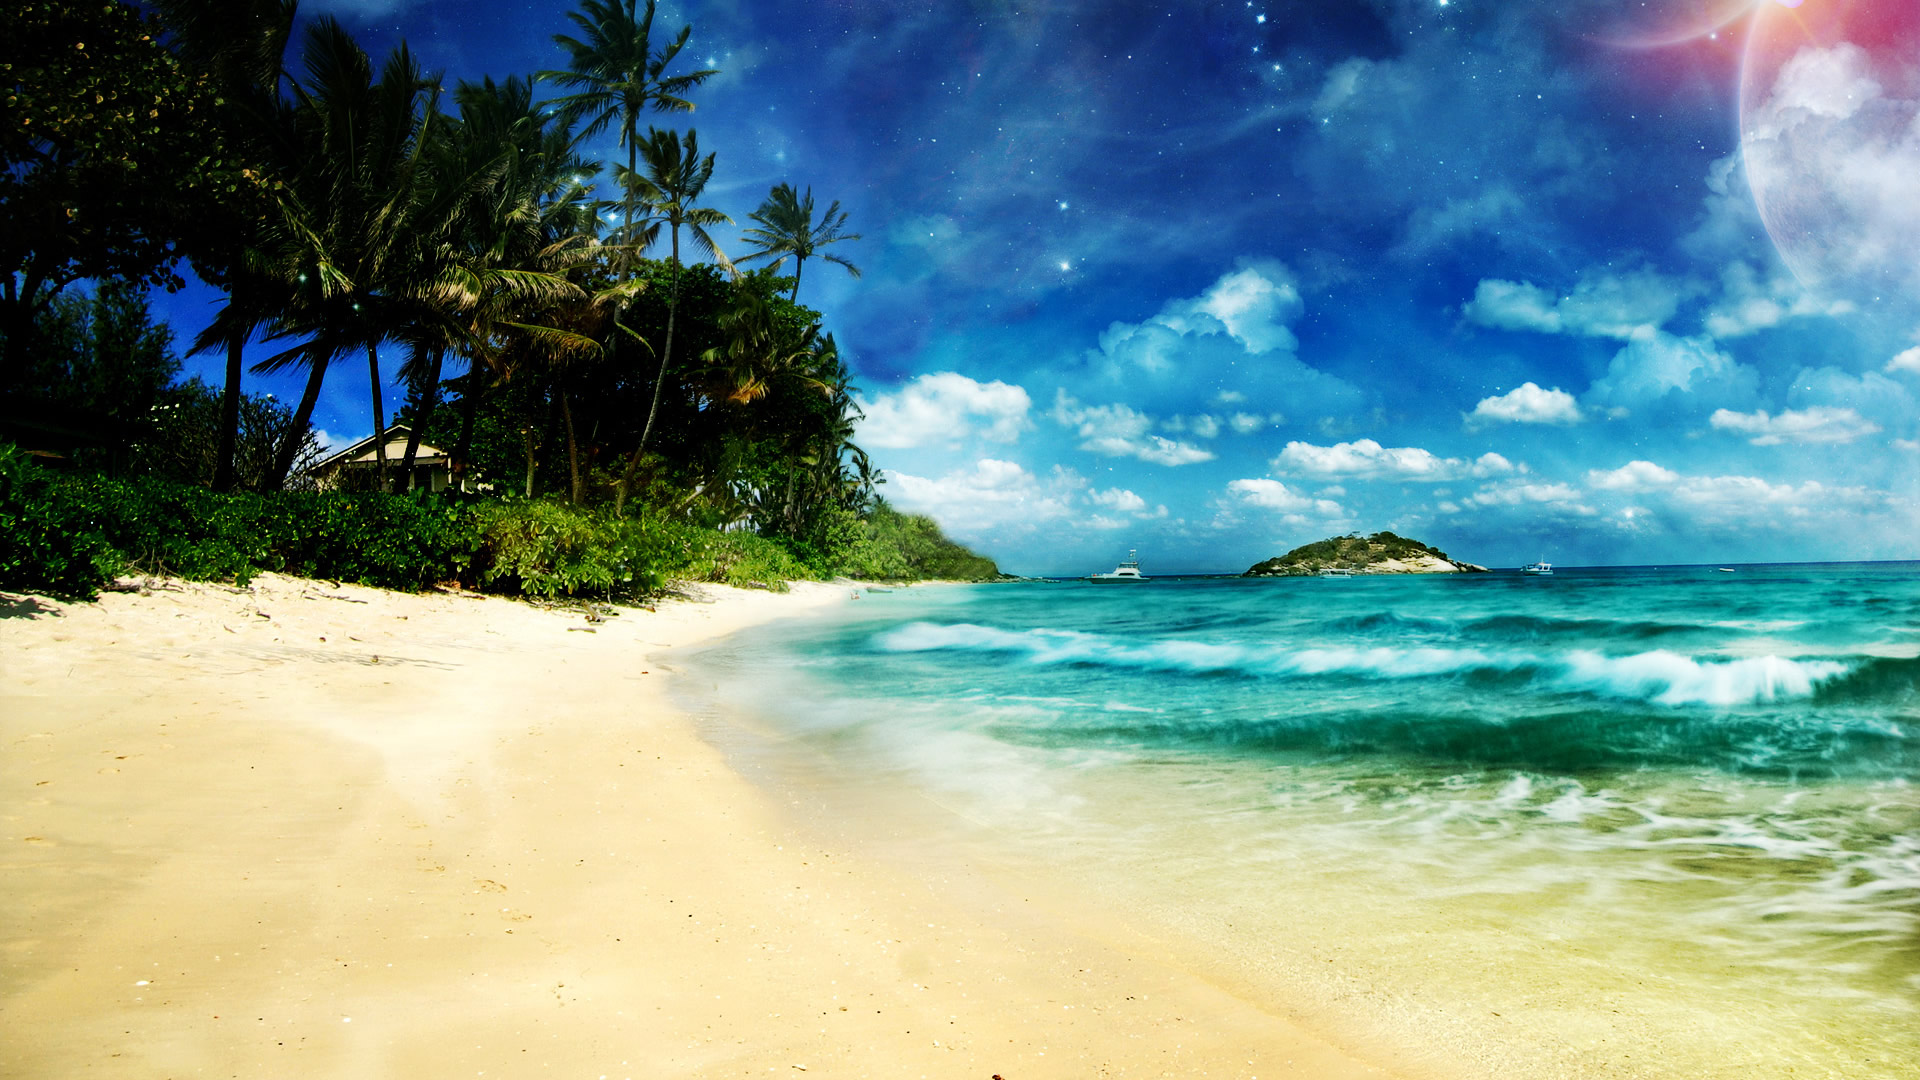 Hình nền mùa hè sẽ đưa bạn đến với một khoảng không gian tươi vui, rực rỡ màu sắc và tràn đầy năng lượng. Hãy cùng thưởng thức những hình ảnh đẹp lung linh như ánh nắng, bãi biển cát trắng hay làn nước trong xanh. Hình nền mùa hè sẽ làm bạn cảm thấy khoan khoái và đầy sức sống.